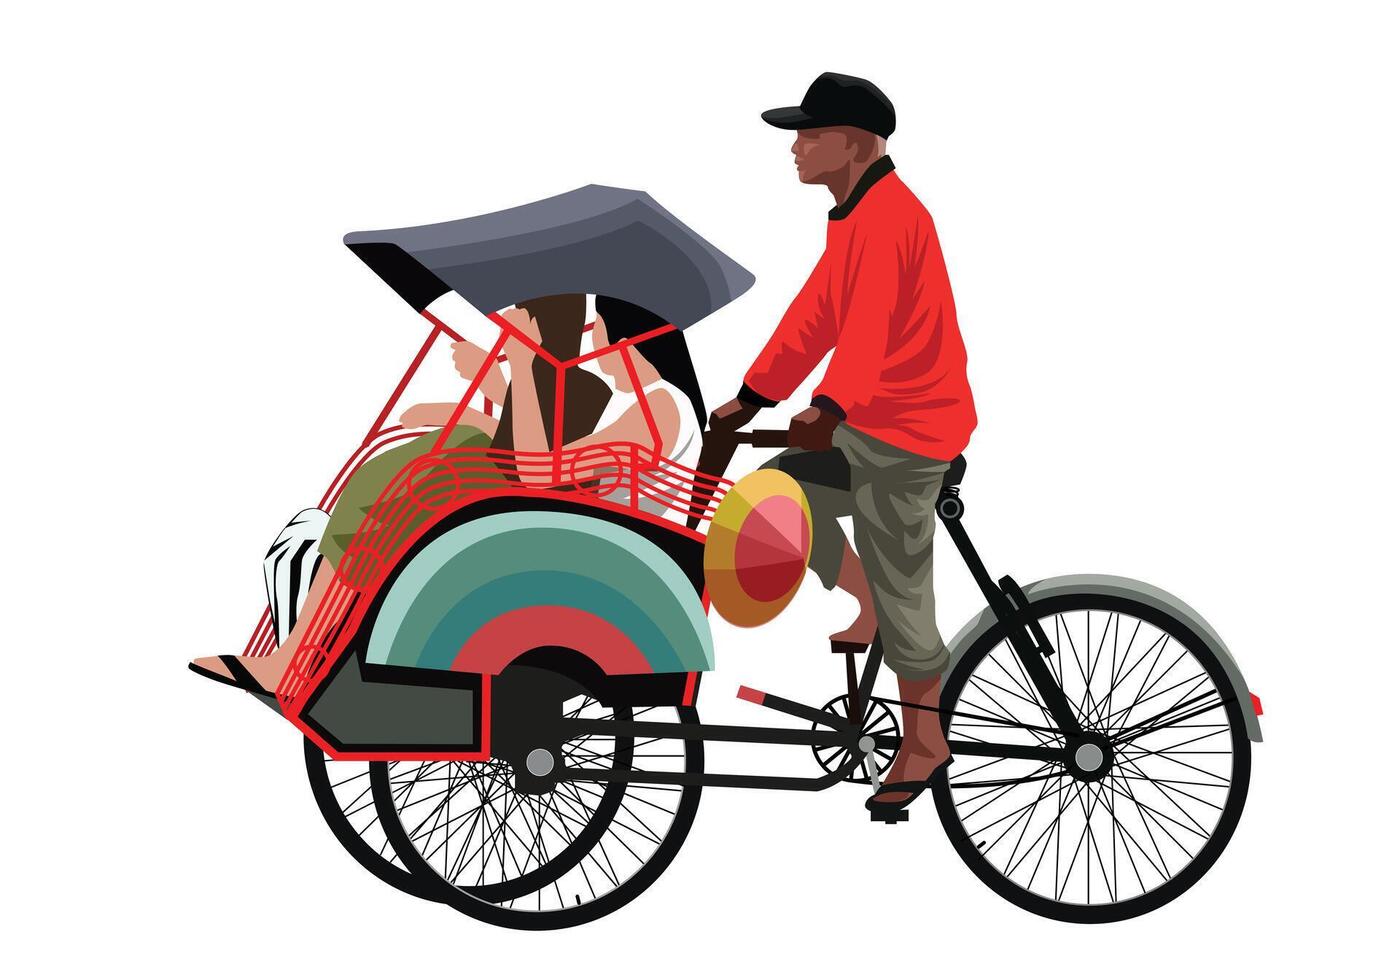 Rickshaw passenger becak yogyakarta vector for background design.